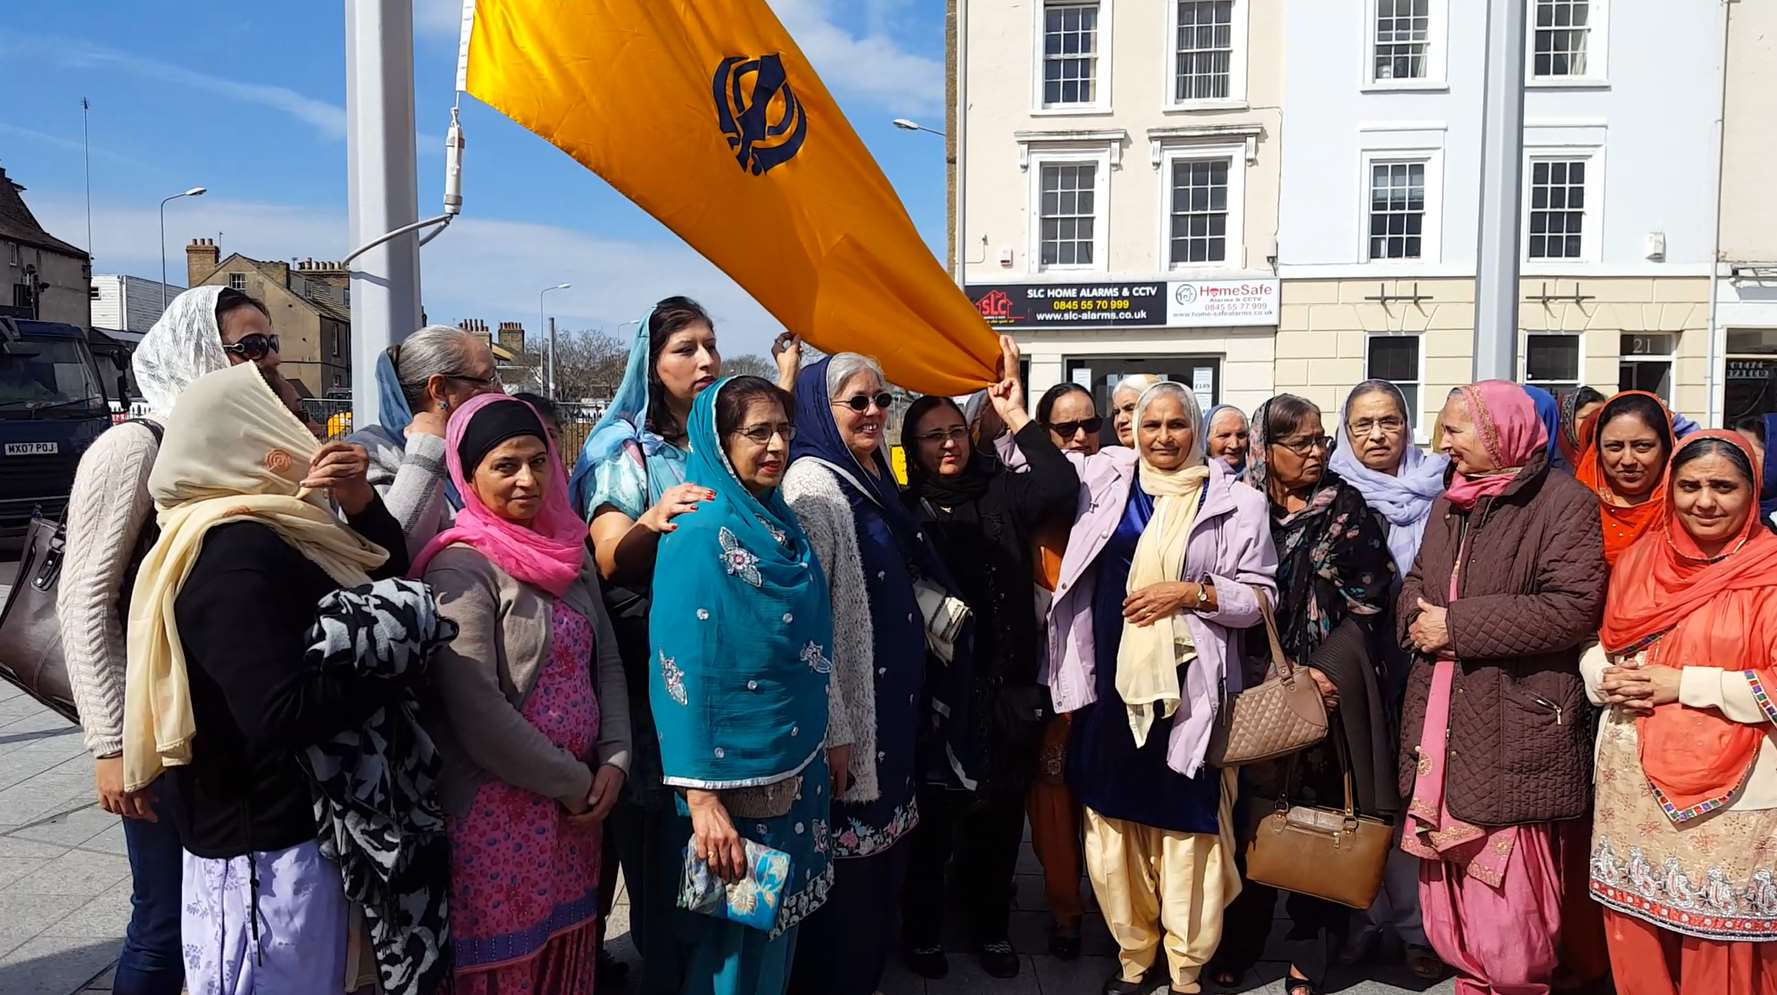 Some of Gravesend's Sikh community prepare for the flag raising.